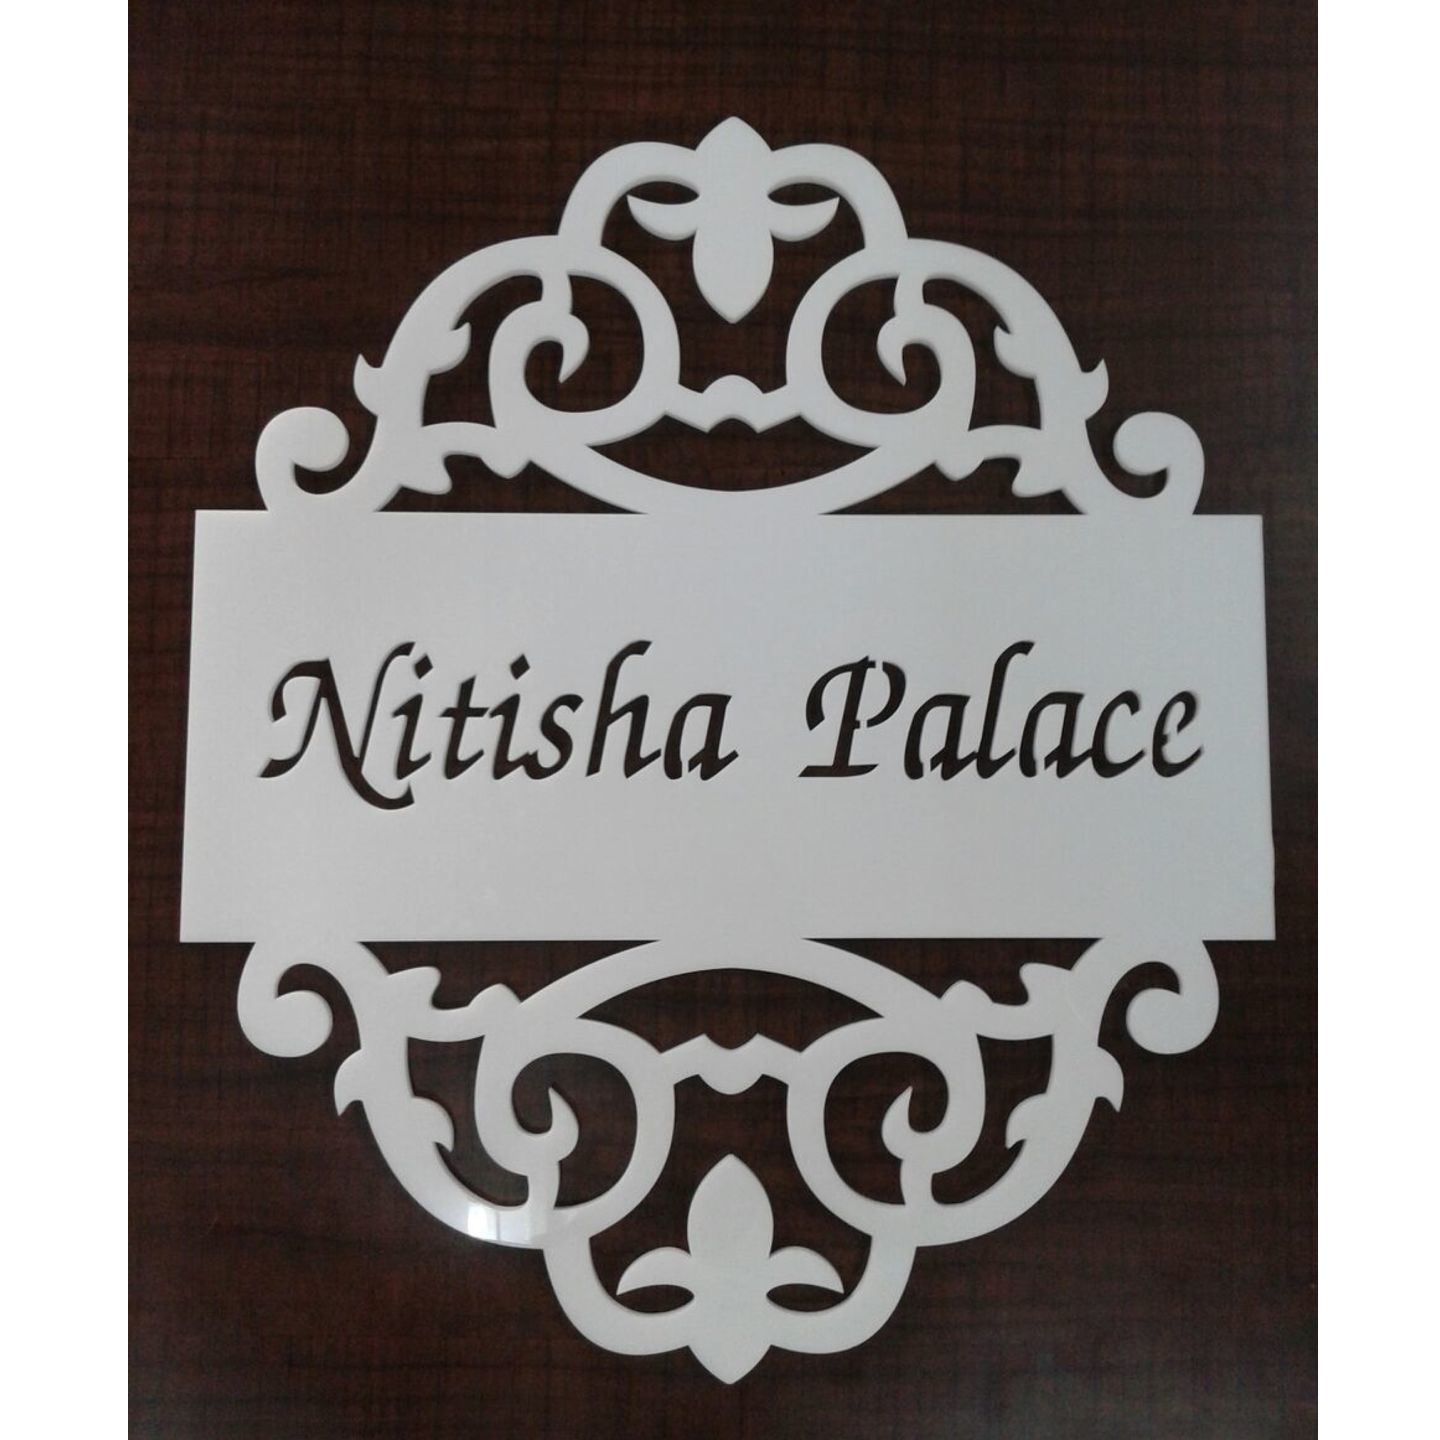 Nitisha Palace